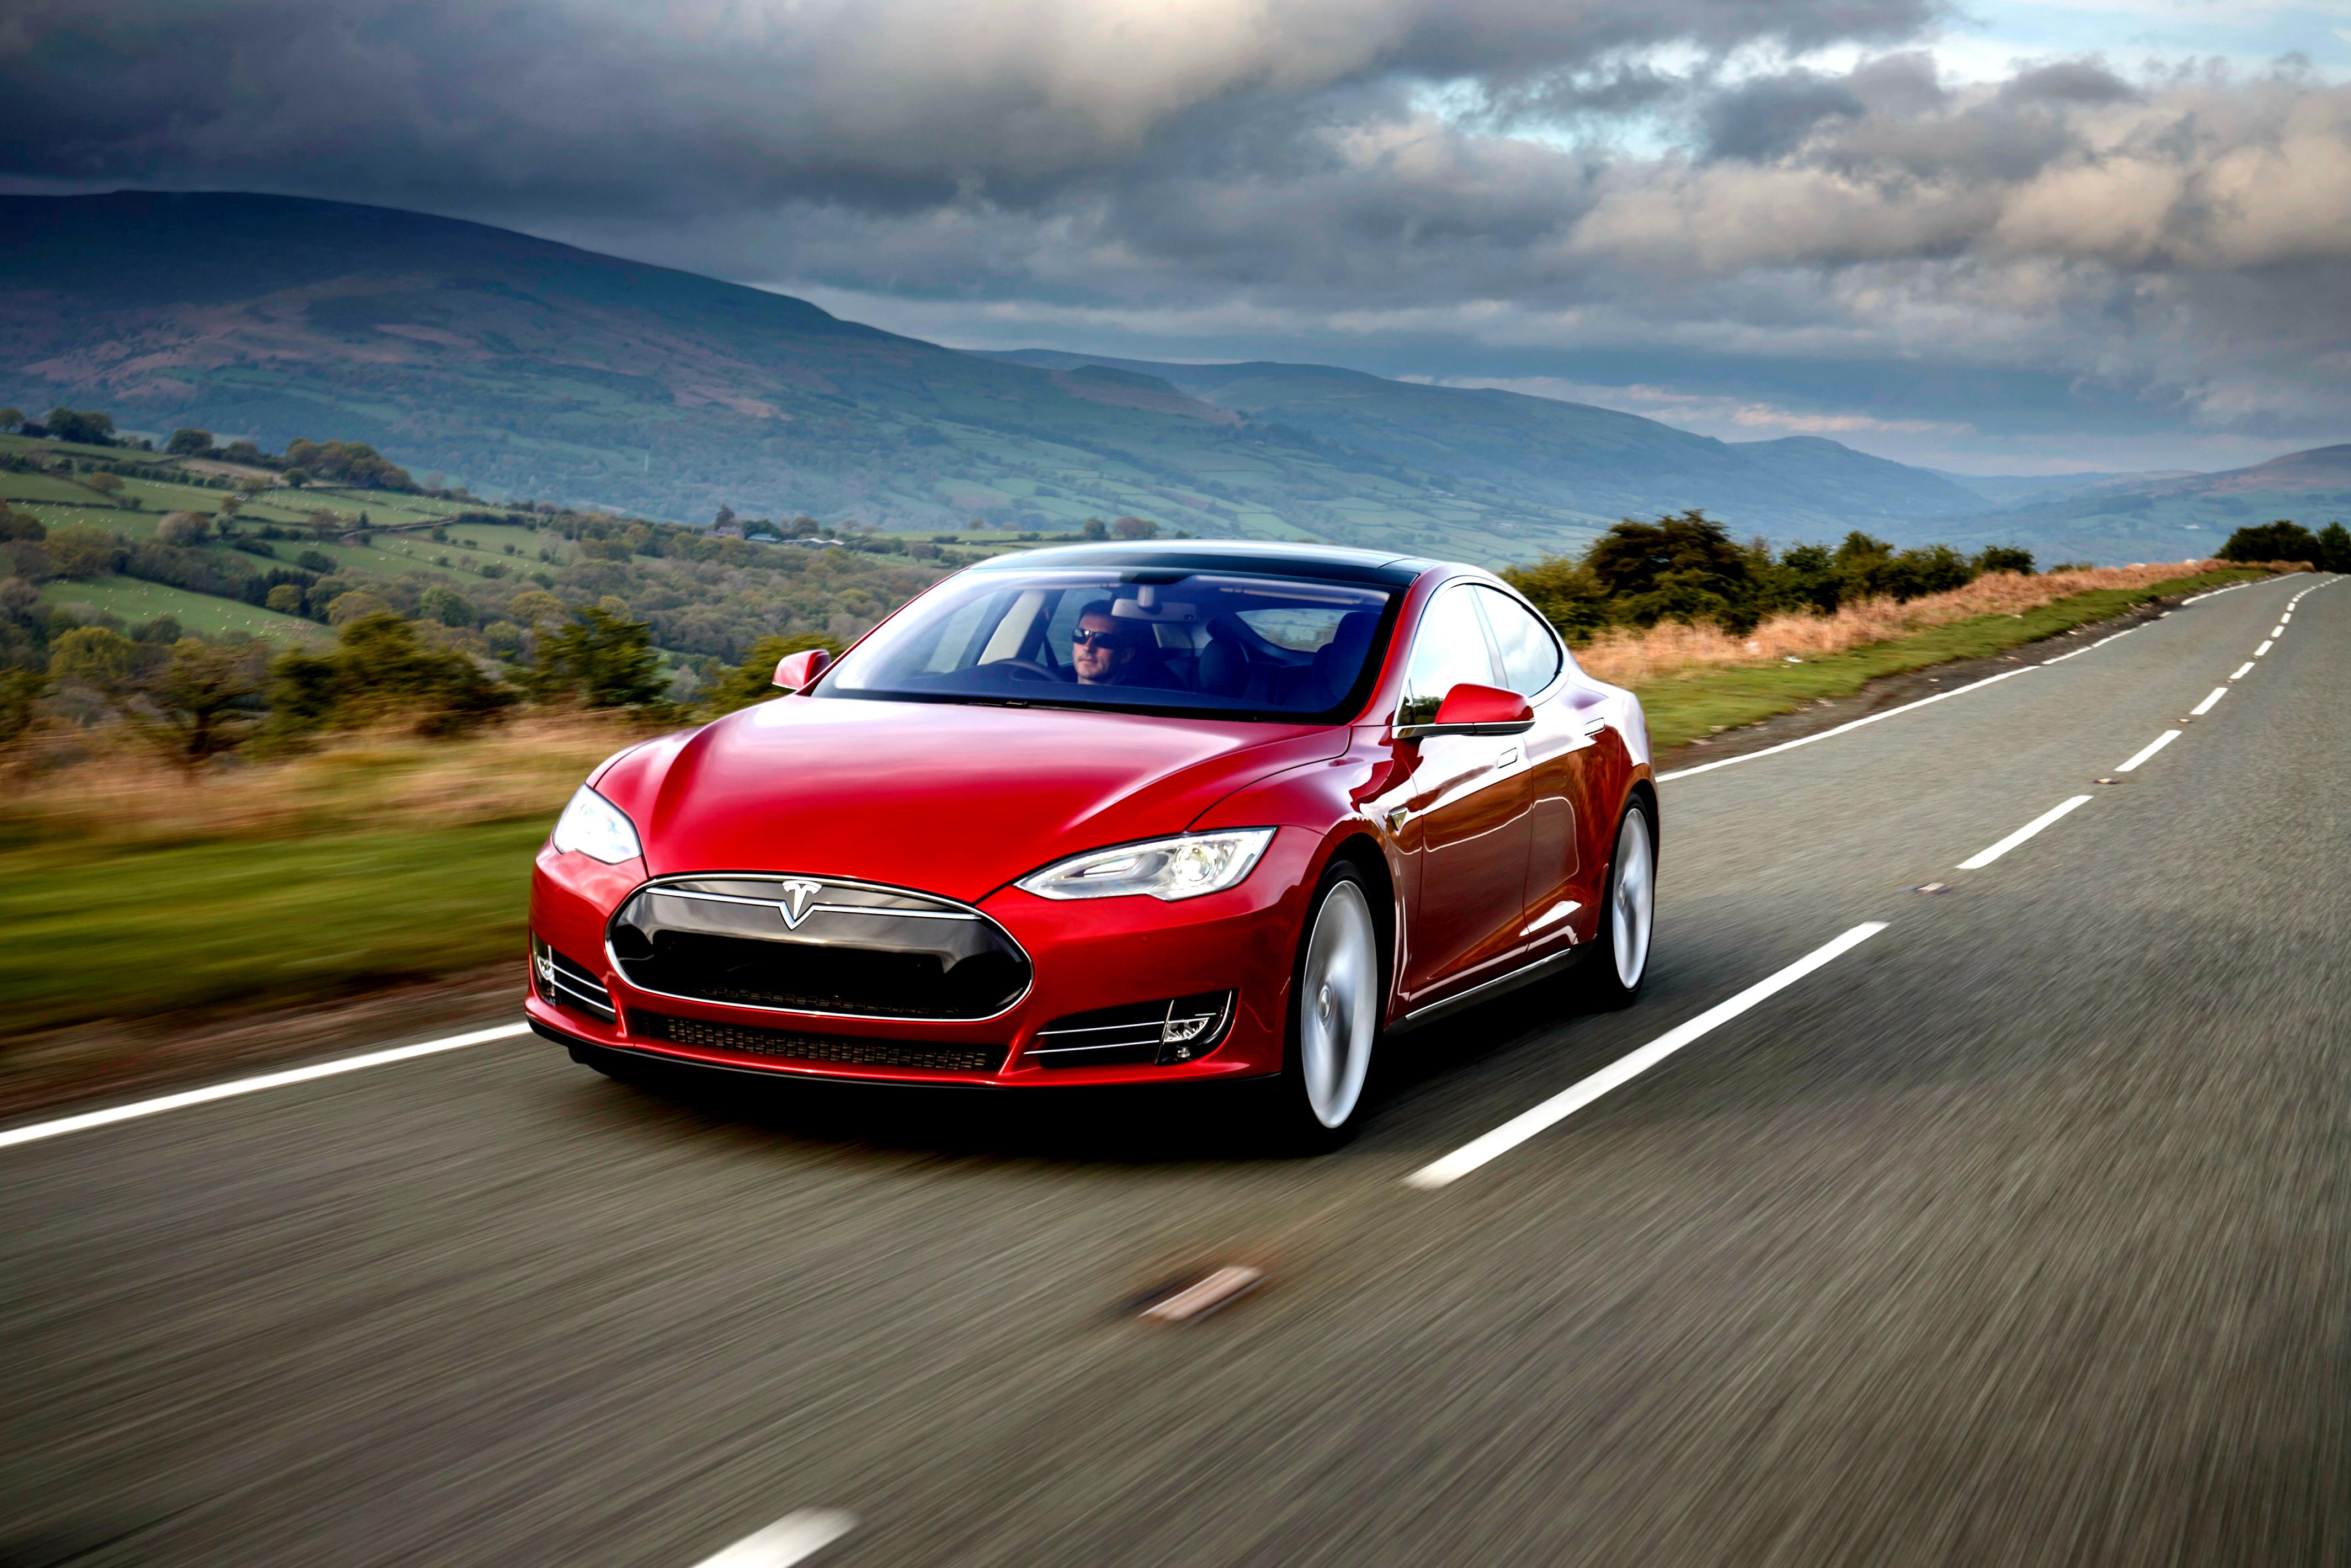 Tesla Motors Model S 2012 #67